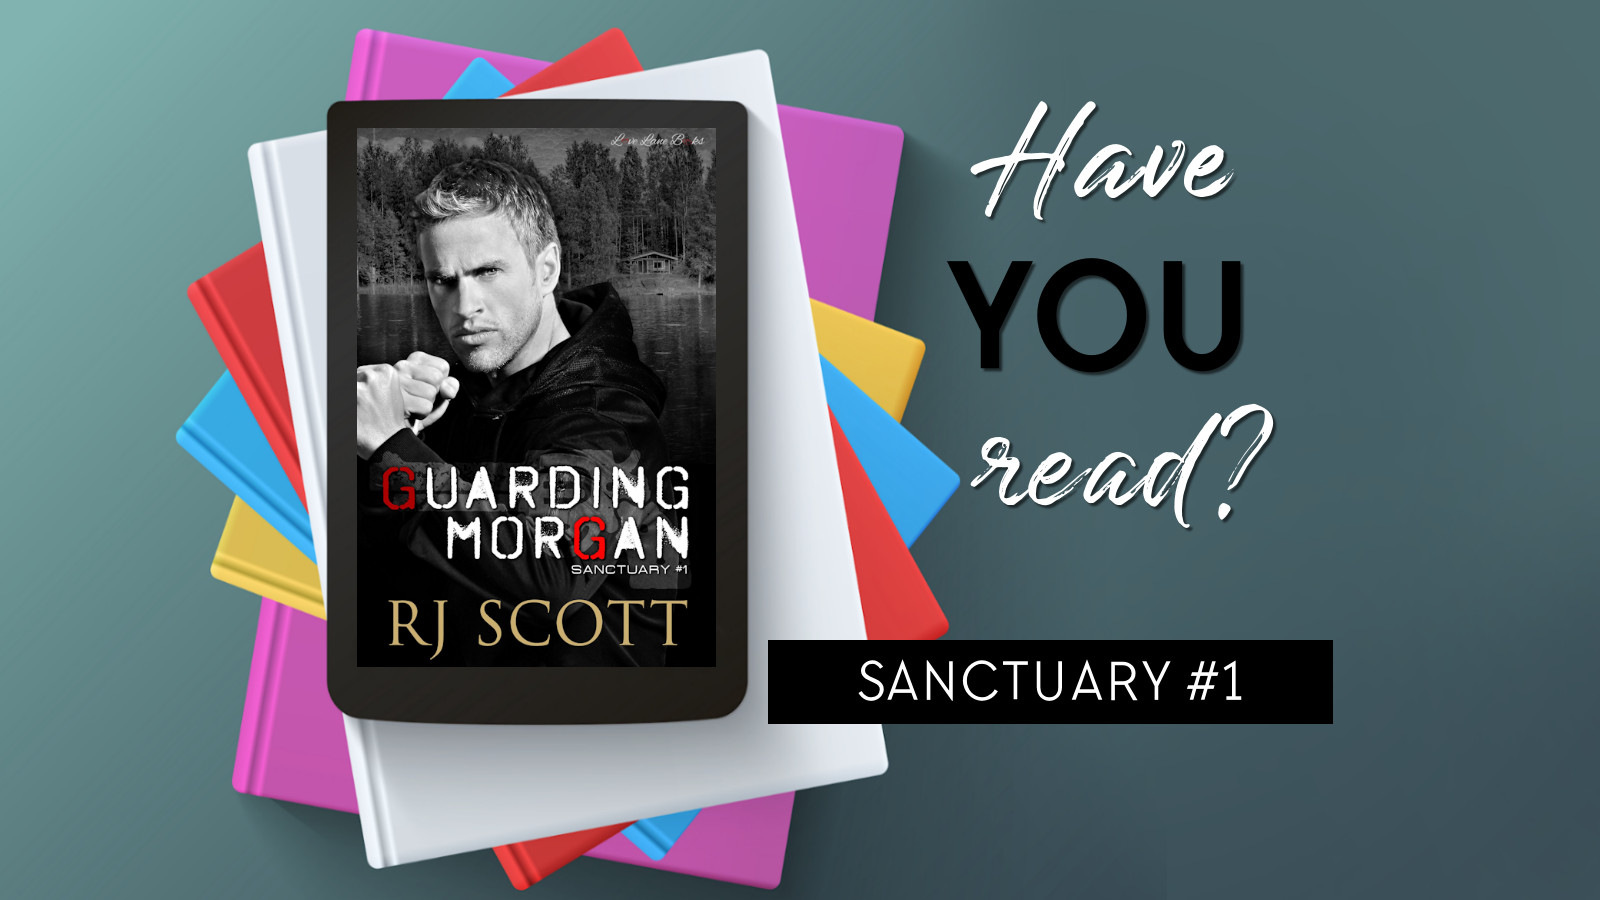 Have you read Sanctuary Series MMRomance RJ Scott